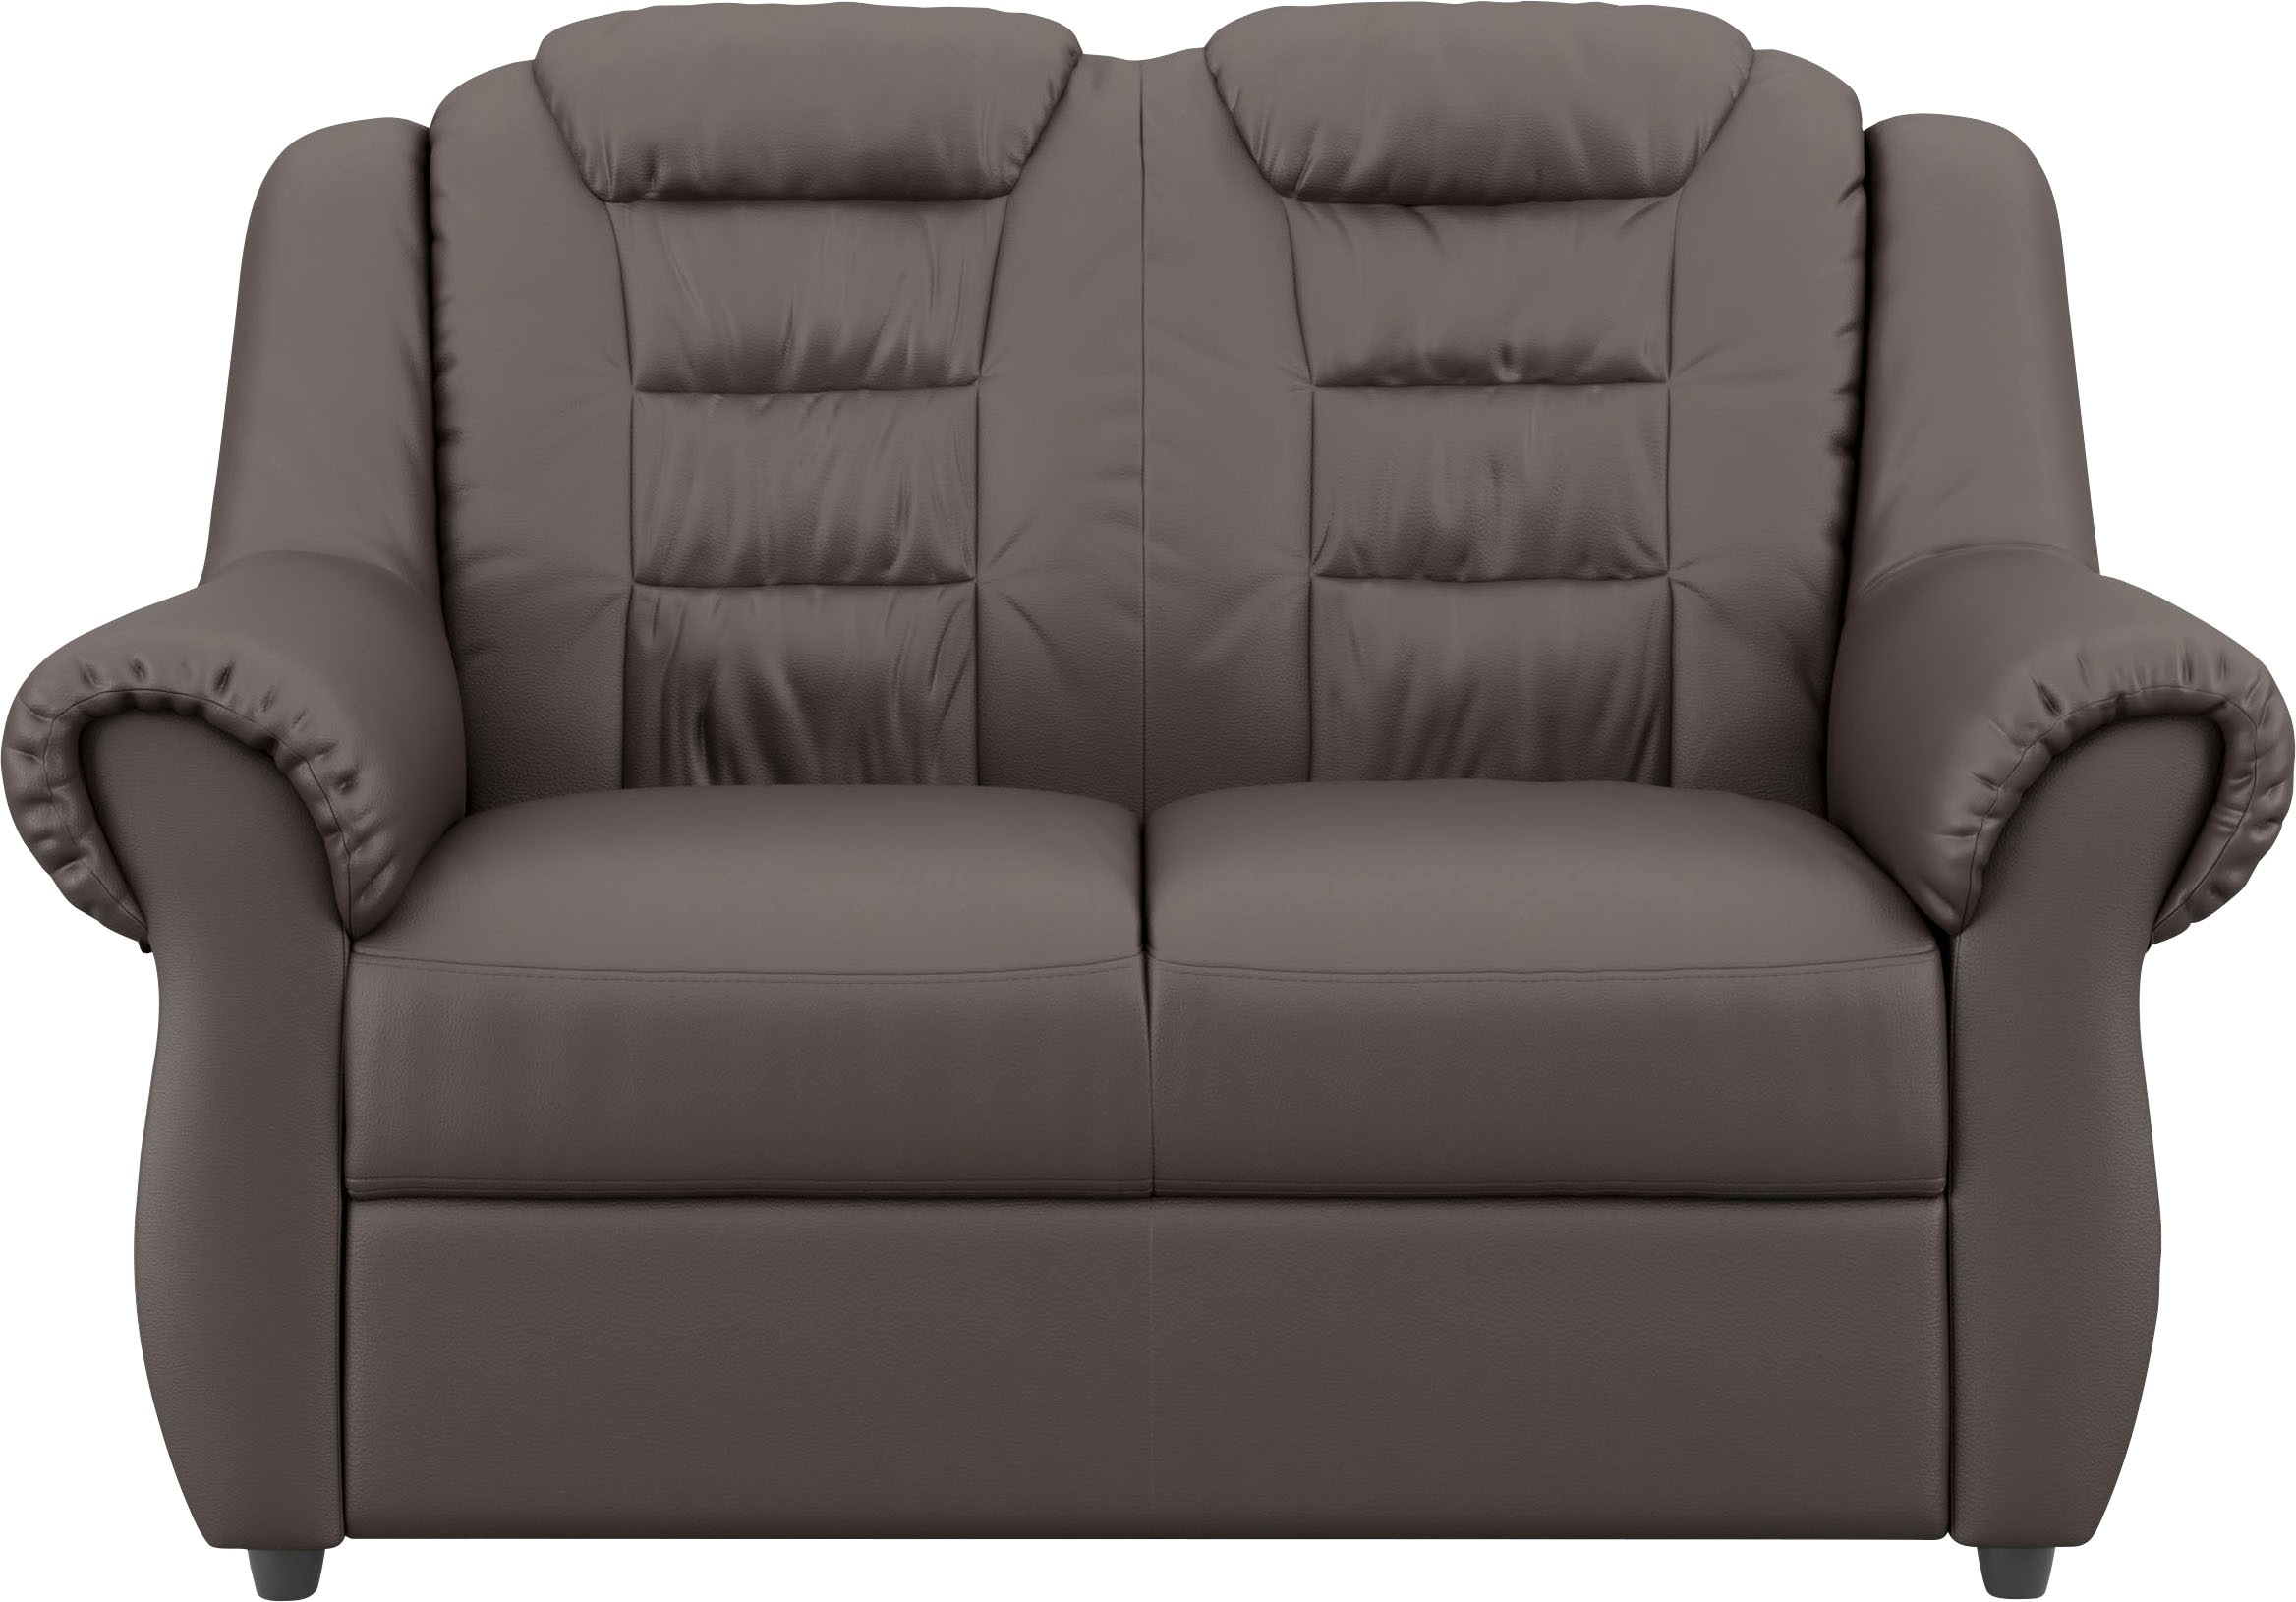 Home affaire 2-Sitzer »Boston«, Gemütlicher 2-Sitzer mit hoher Rückenlehne in klassischem Design